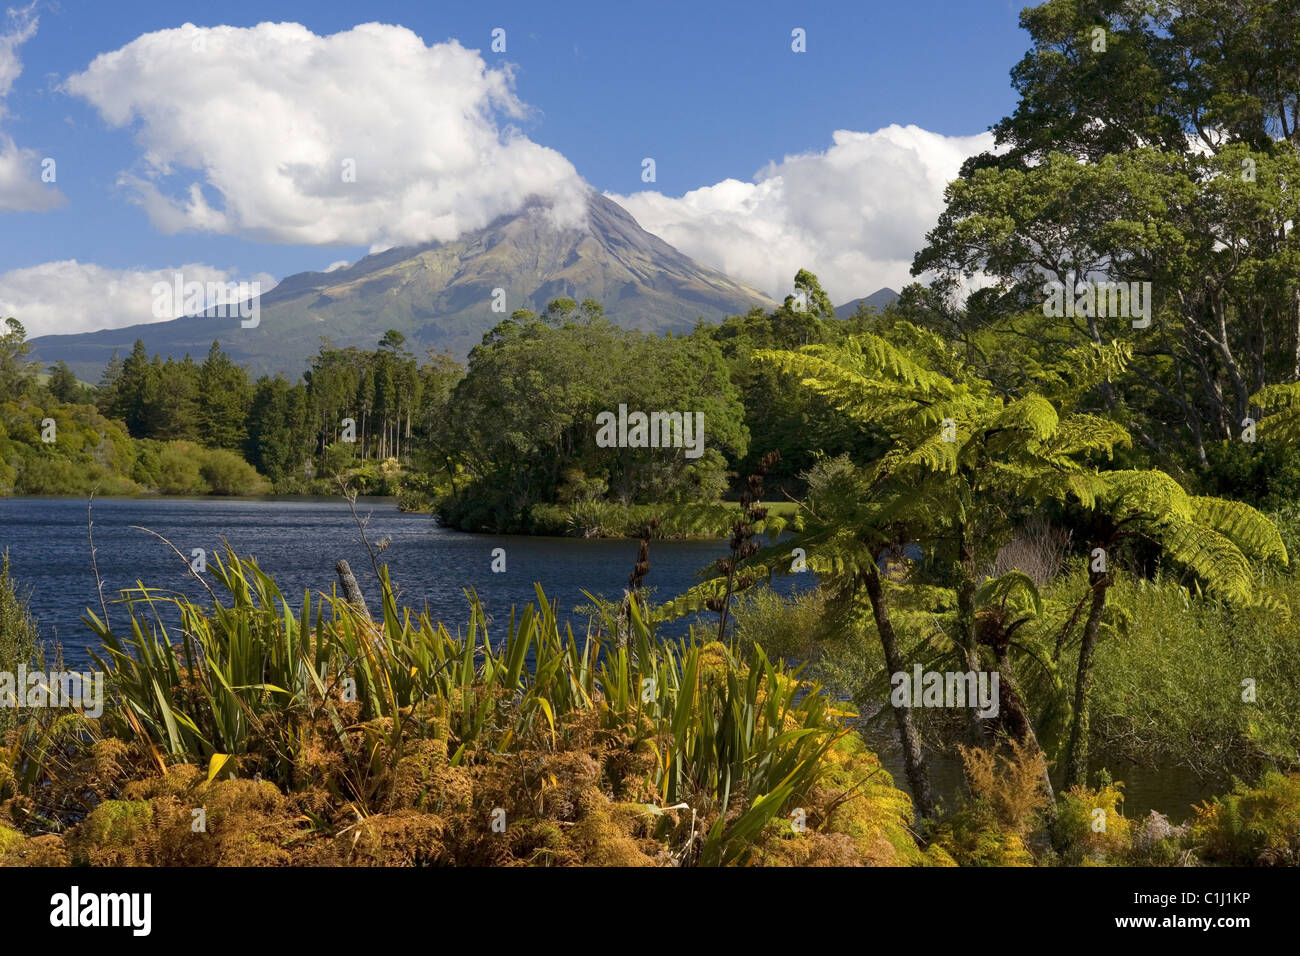 Mount Egmont, New Zealand Stock Photo